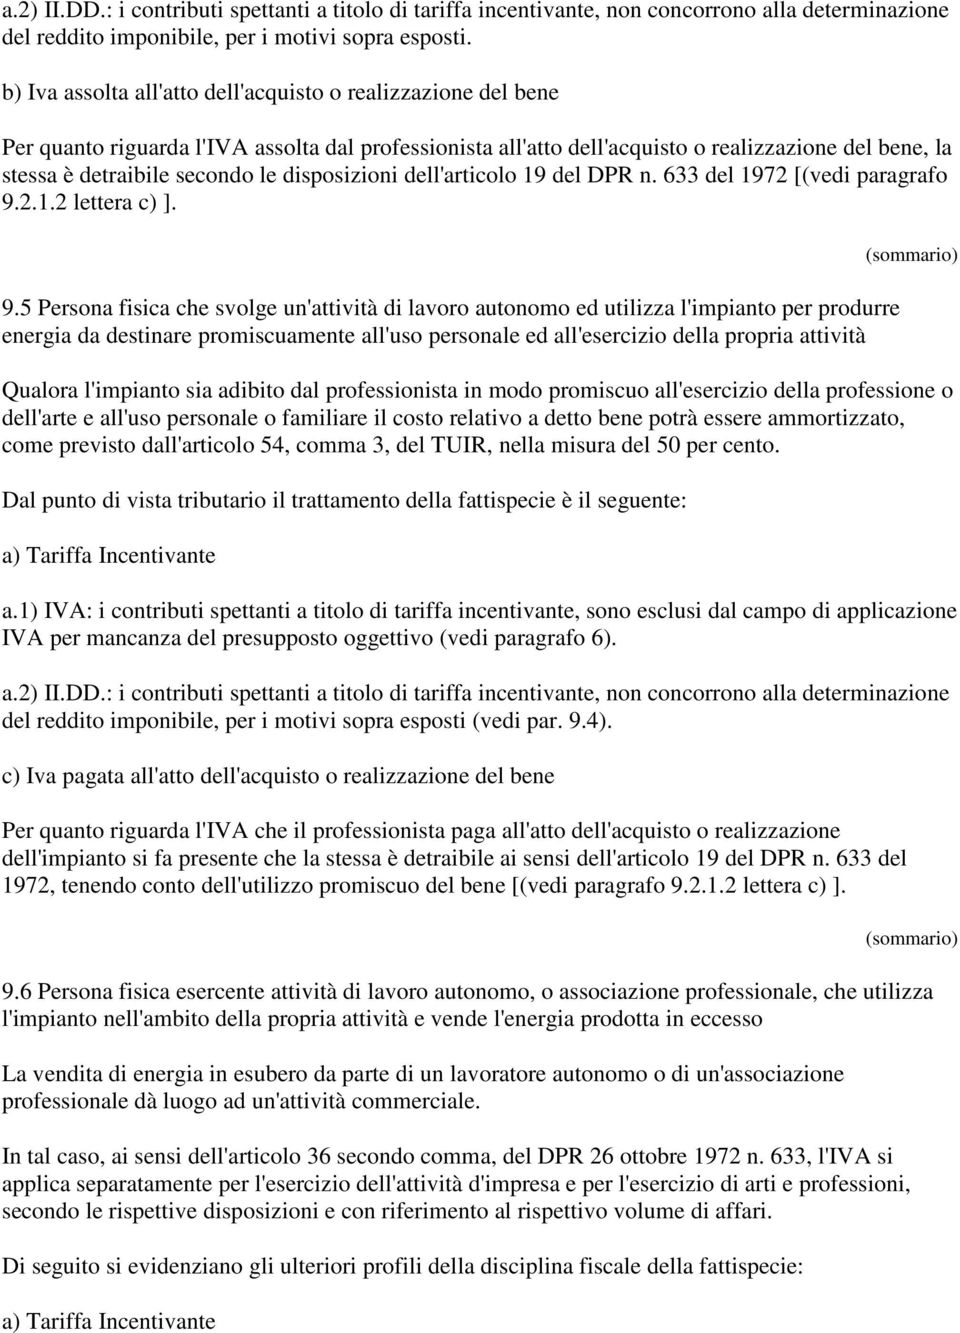 disposizioni dell'articolo 19 del DPR n. 633 del 1972 [(vedi paragrafo 9.